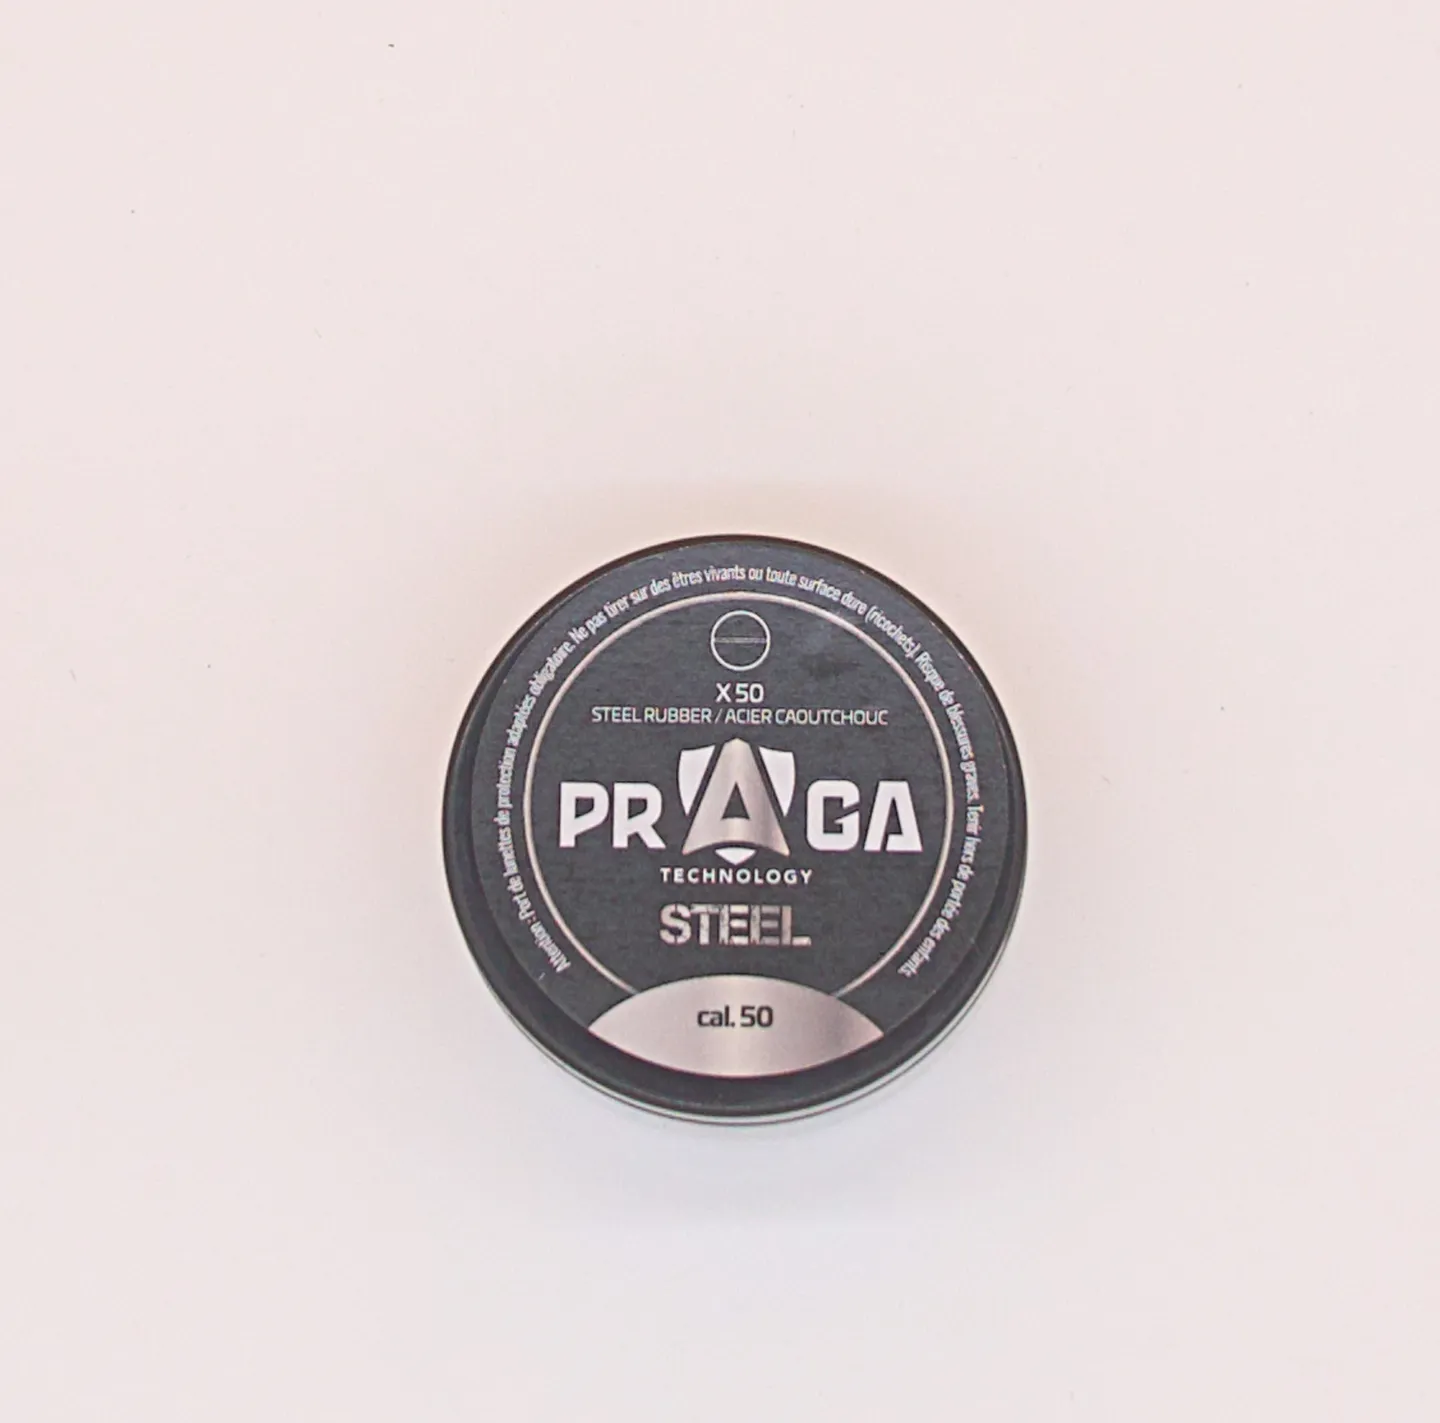 Zubehör und Ausrüstung - Mit Stahl beschwerte Gummigeschosse Kaliber .50 - PRAGA – Eine erhebliche Wirkung